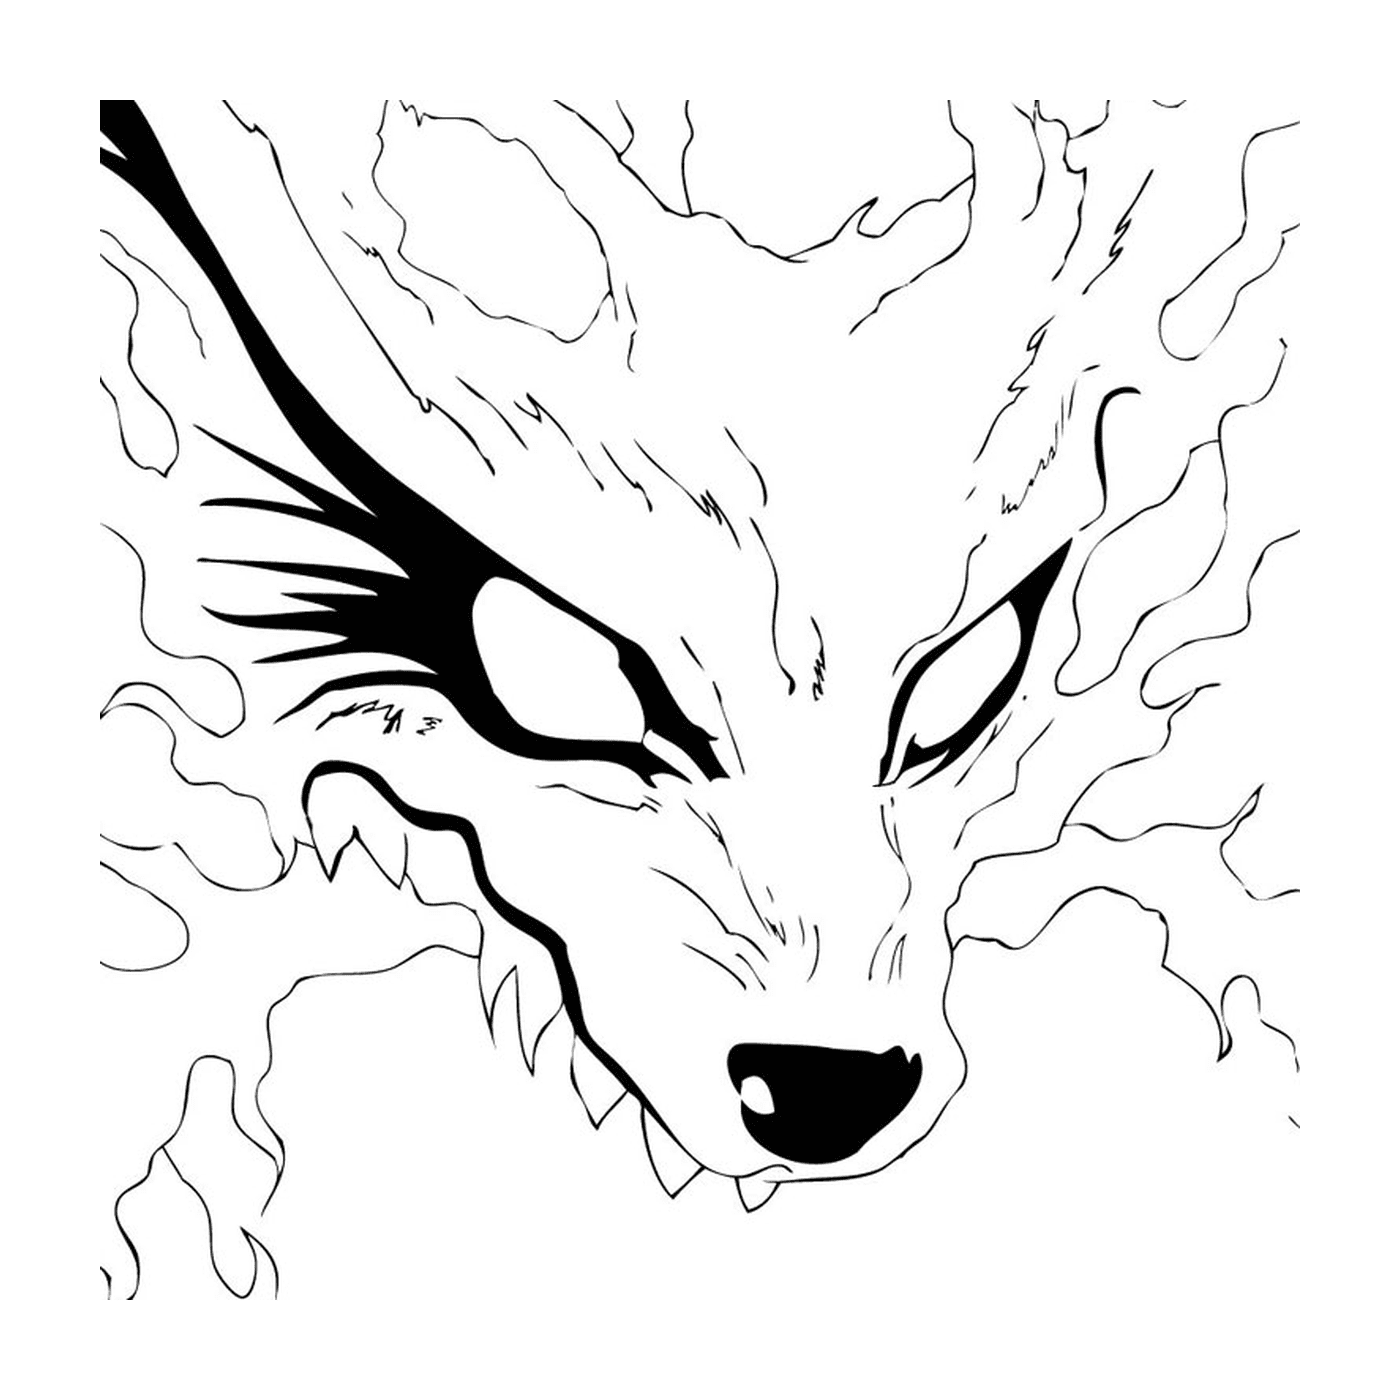  وجه الذئب 